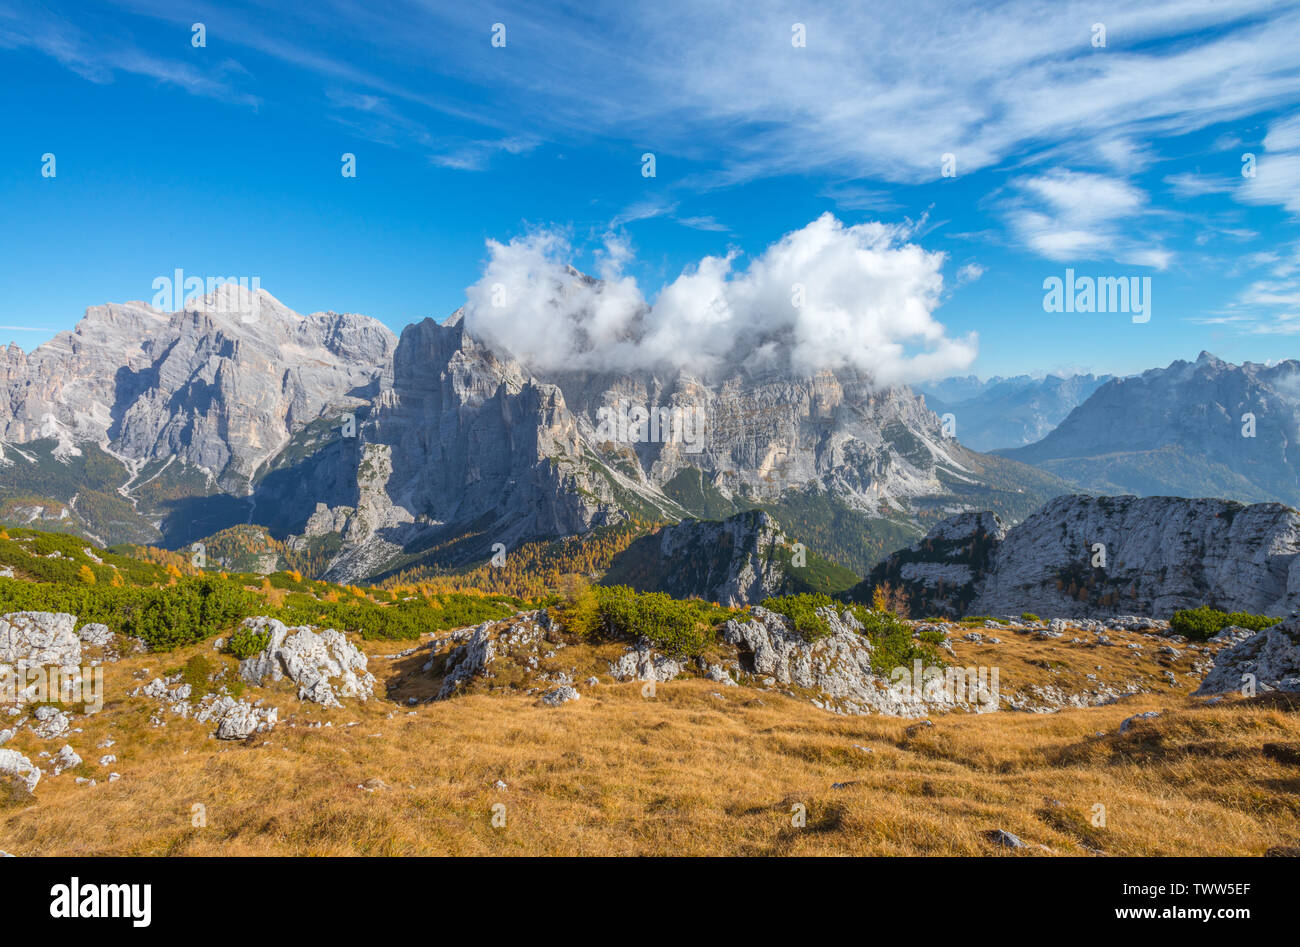 Mélèzes jaune en forêt avec vue sur le mont Moiazza, Alpes italiennes. Vue du sommet de la vallée et la forêt en couleurs d'automne. Feuillage en Italie. Banque D'Images